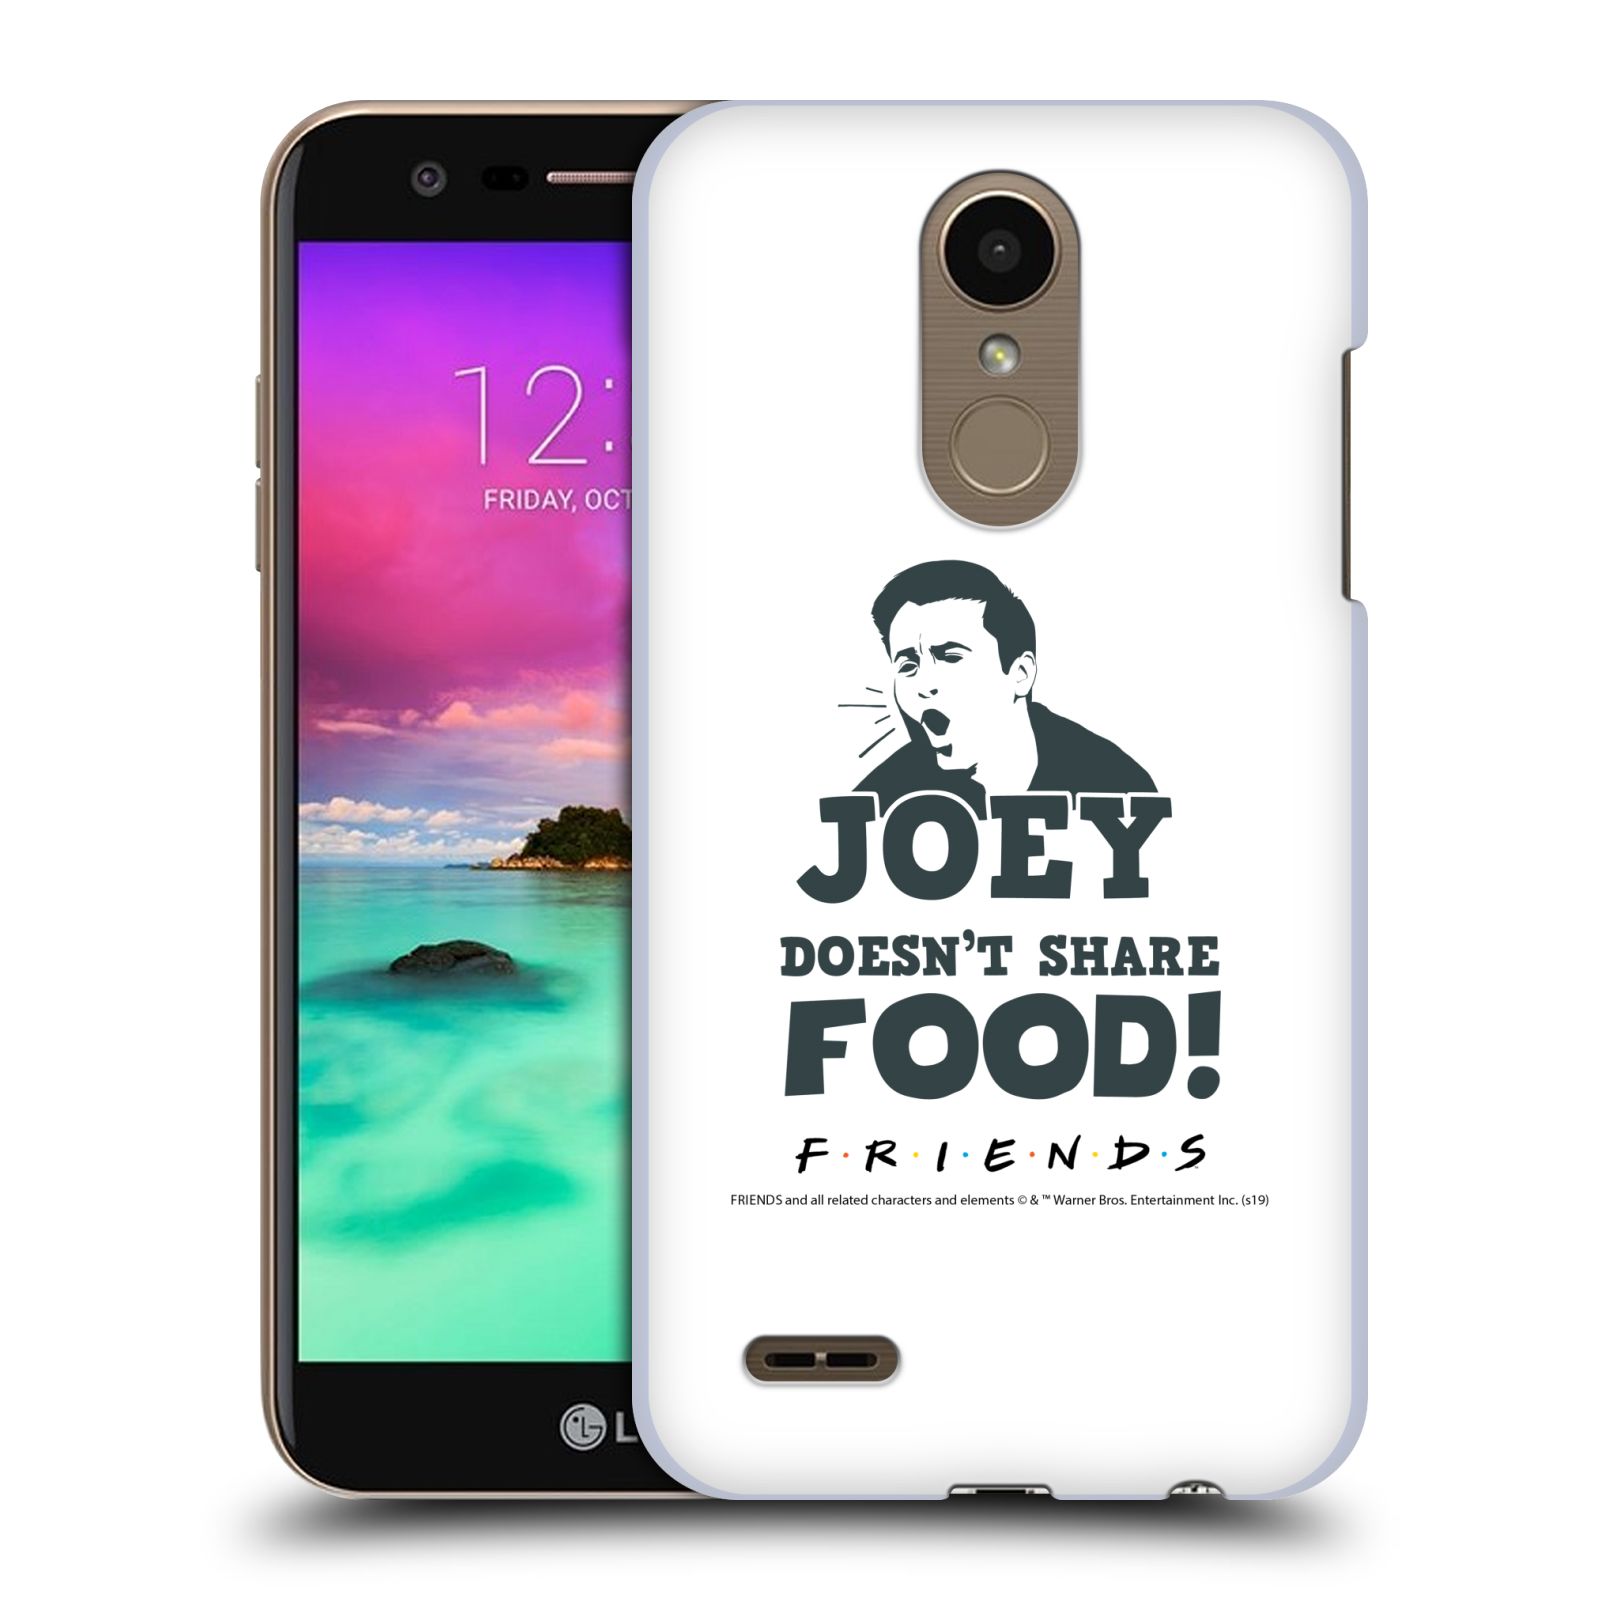 Pouzdro na mobil LG K10 2018 - HEAD CASE - Seriál Přátelé - Joey se o jídlo nedělí